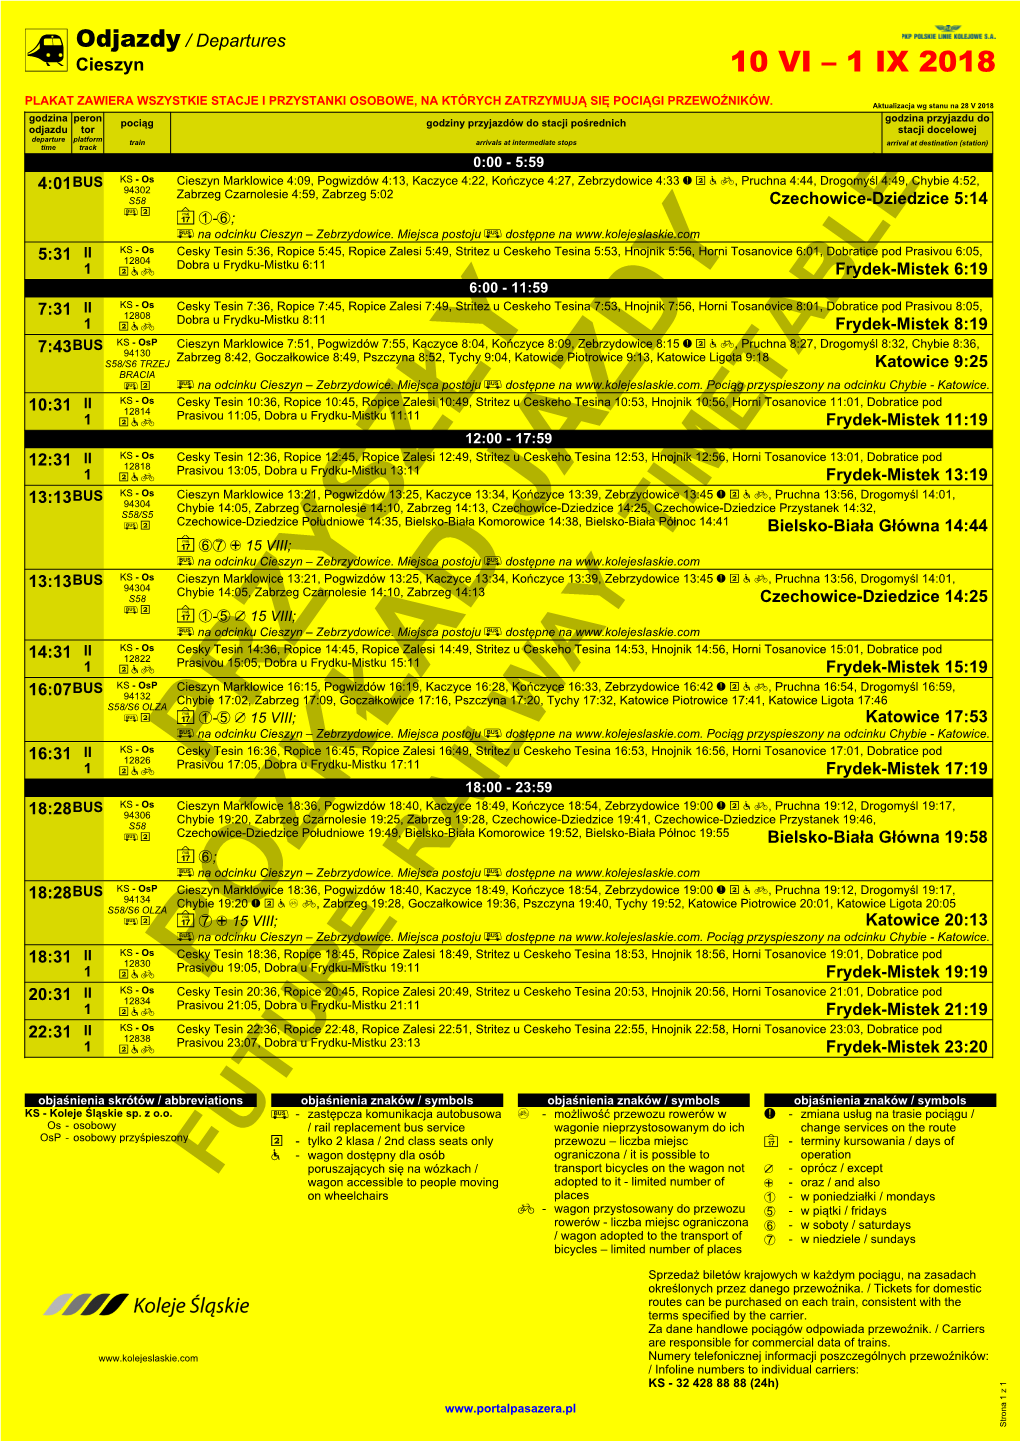 Future Railway Timetable